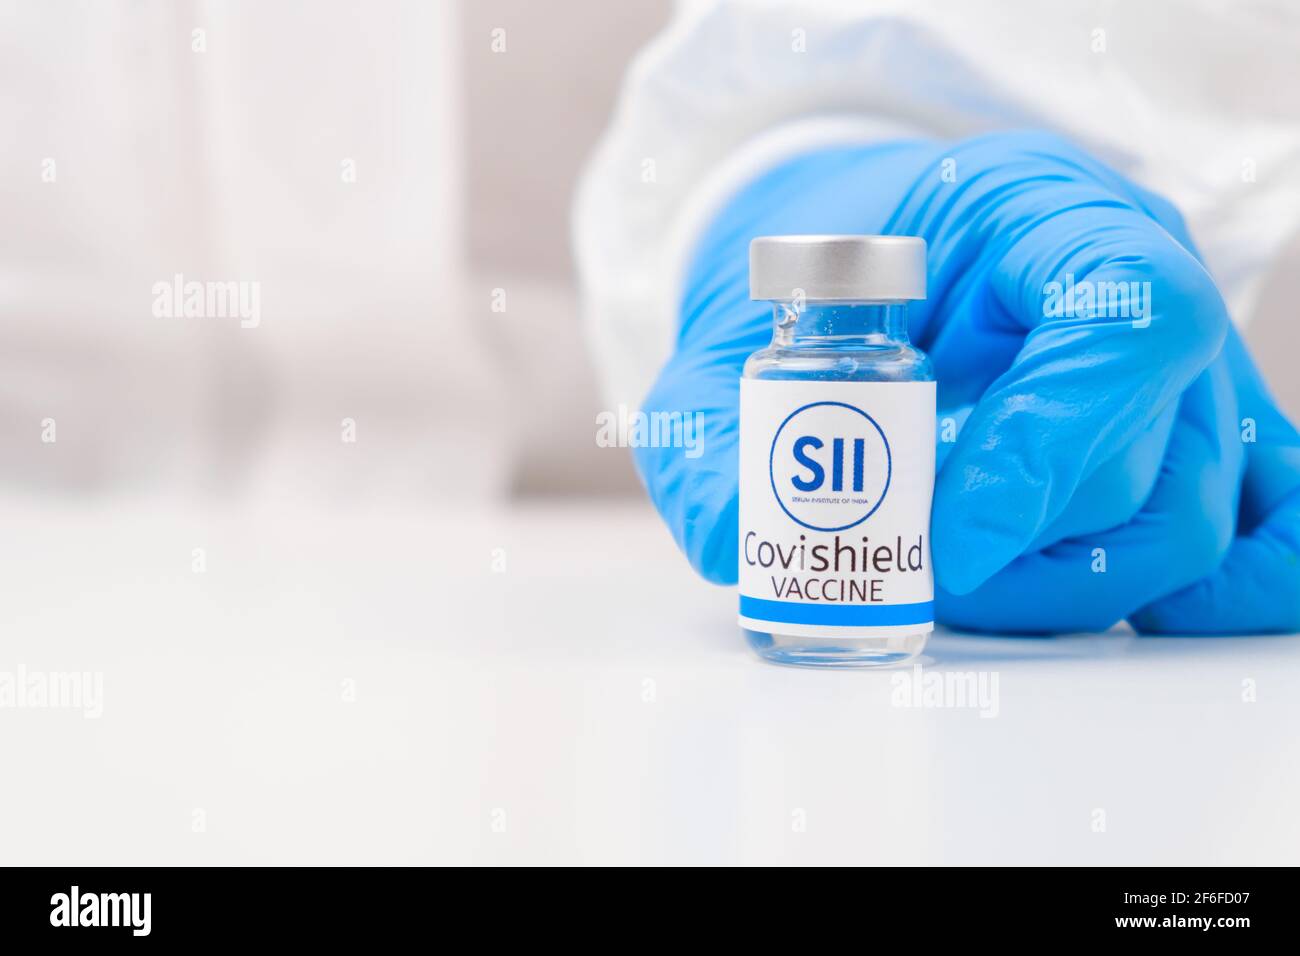 Vaccino Covisield contro SARS-Cov-2, coronavirus o Covid-19 messo sul tavolo da un medico nei guanti di gomma. Foto Stock